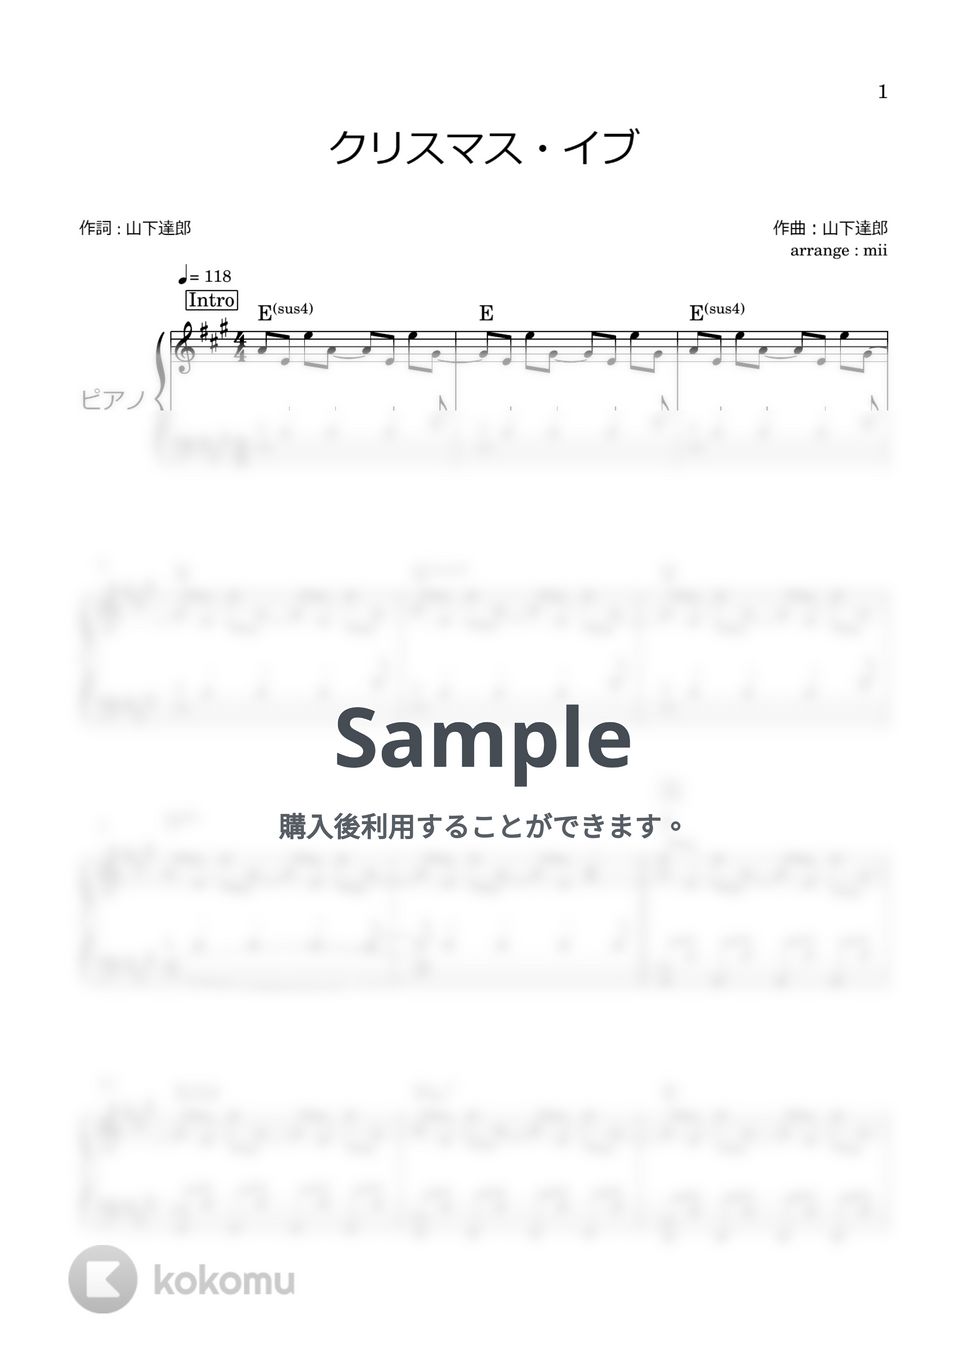 山下達郎 - クリスマス・イブ by miiの楽譜棚